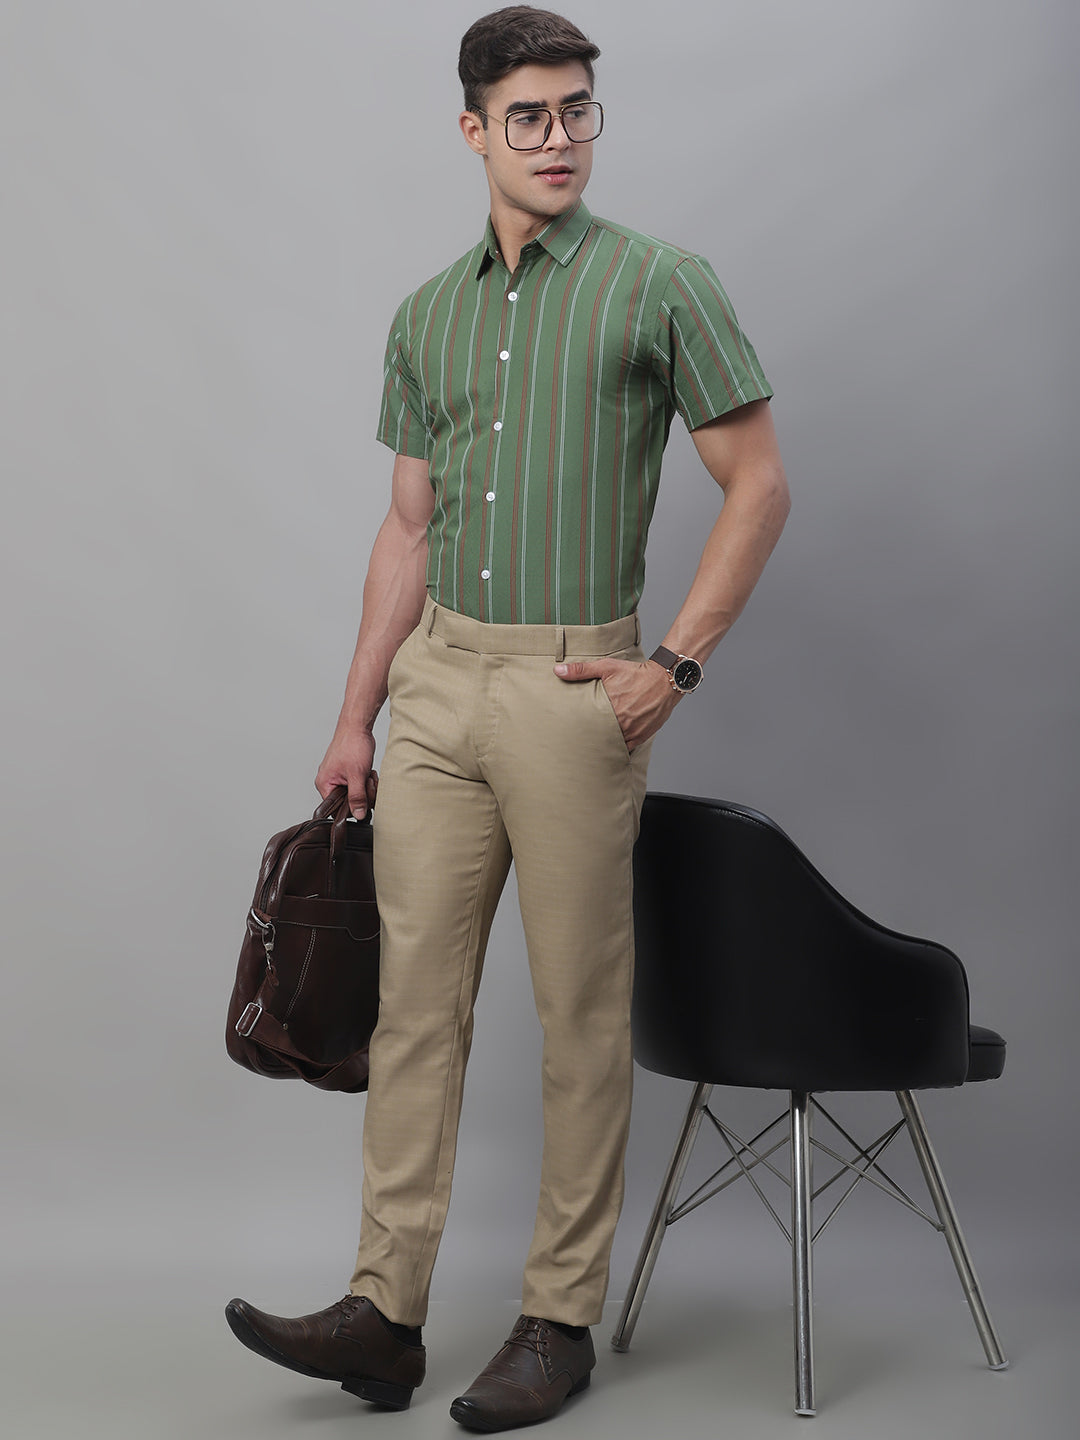 Men's Olive Green Striped Formal Shirt